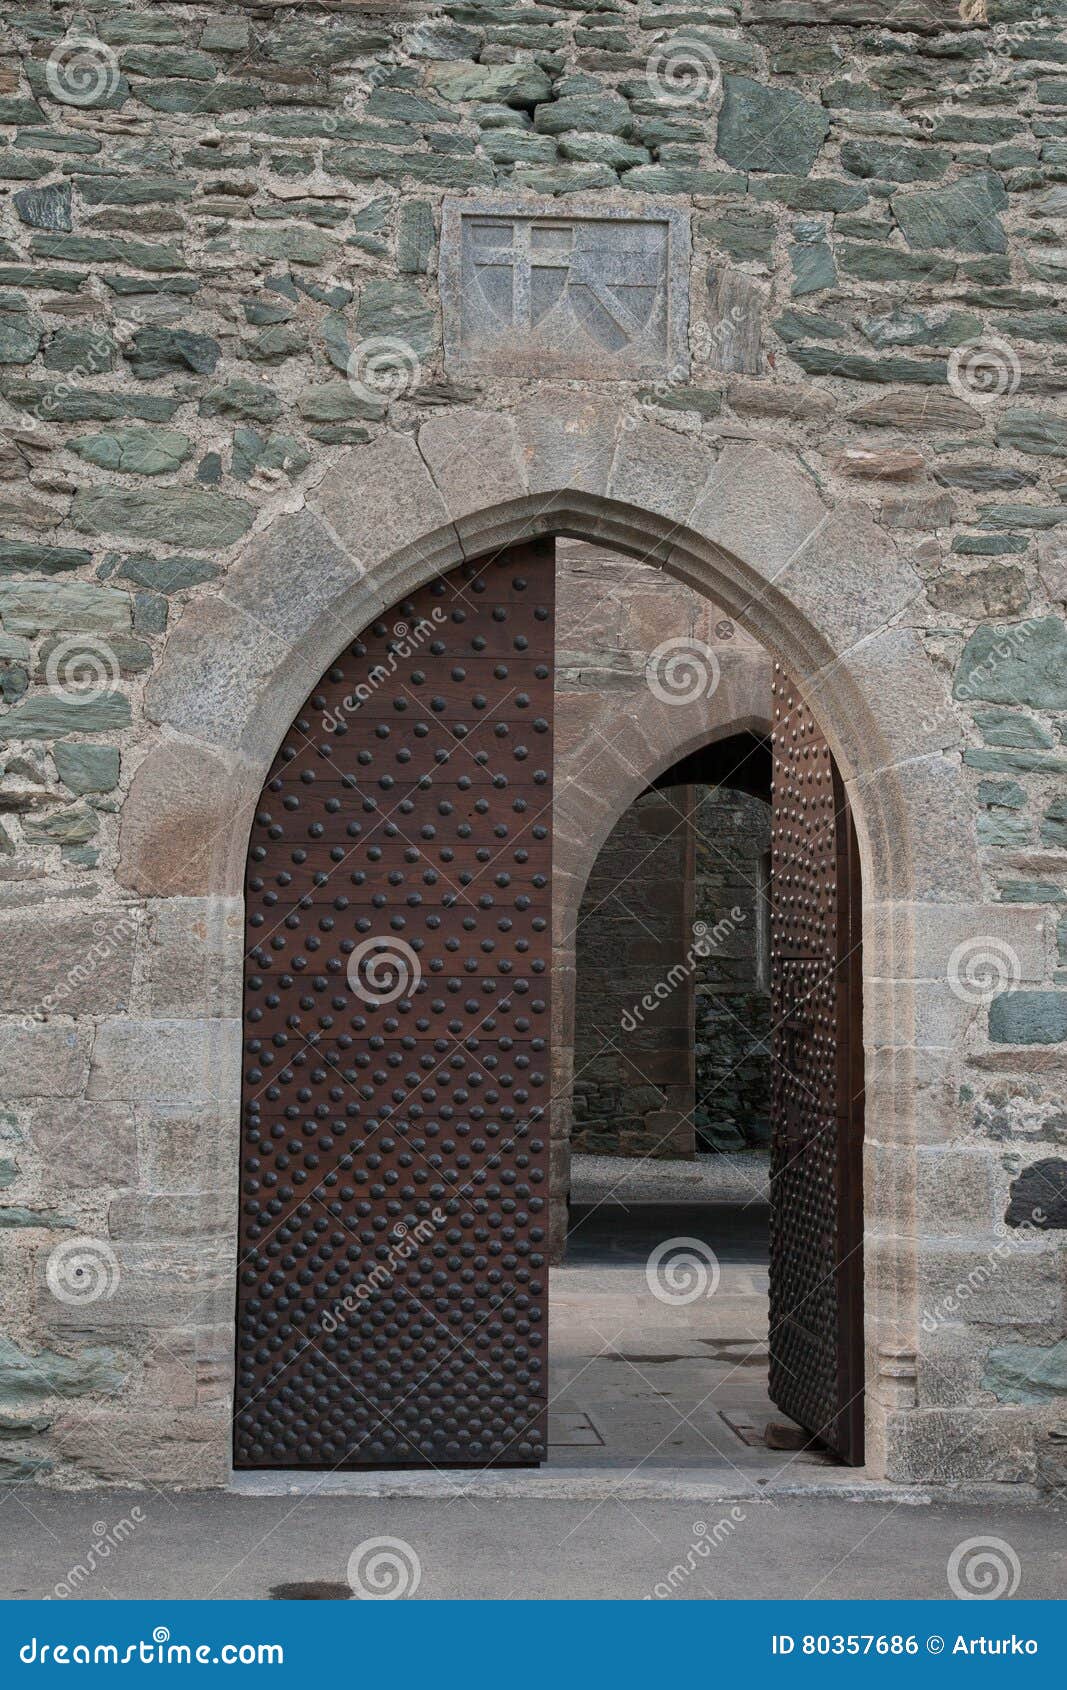 half-open door